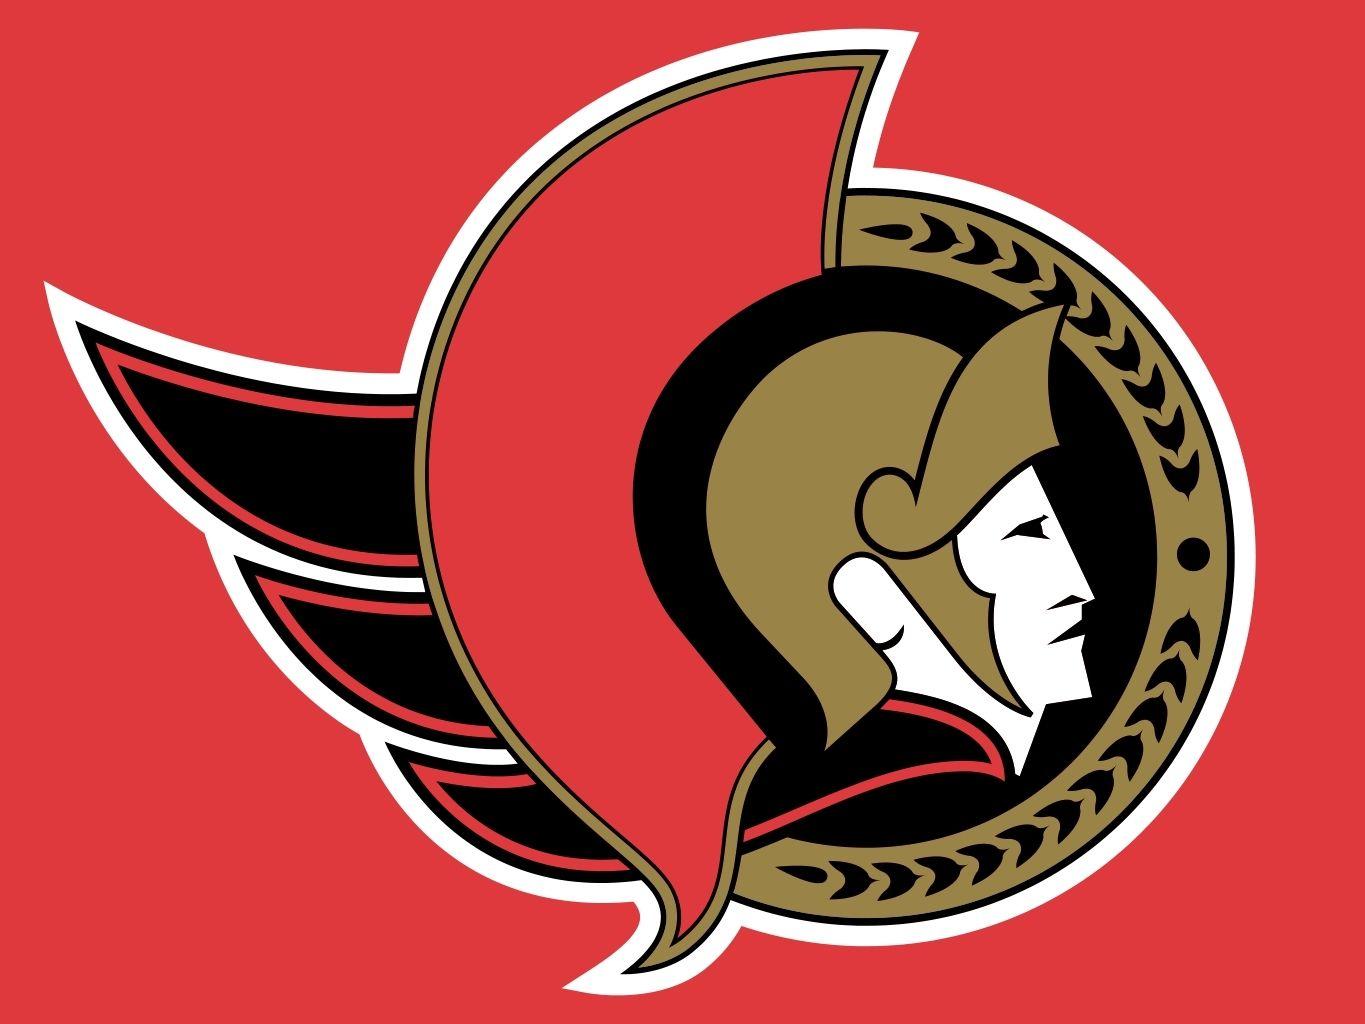 Ottawa Senators Logo - Old Ottawa Senators Logo - Imported - Sens Central